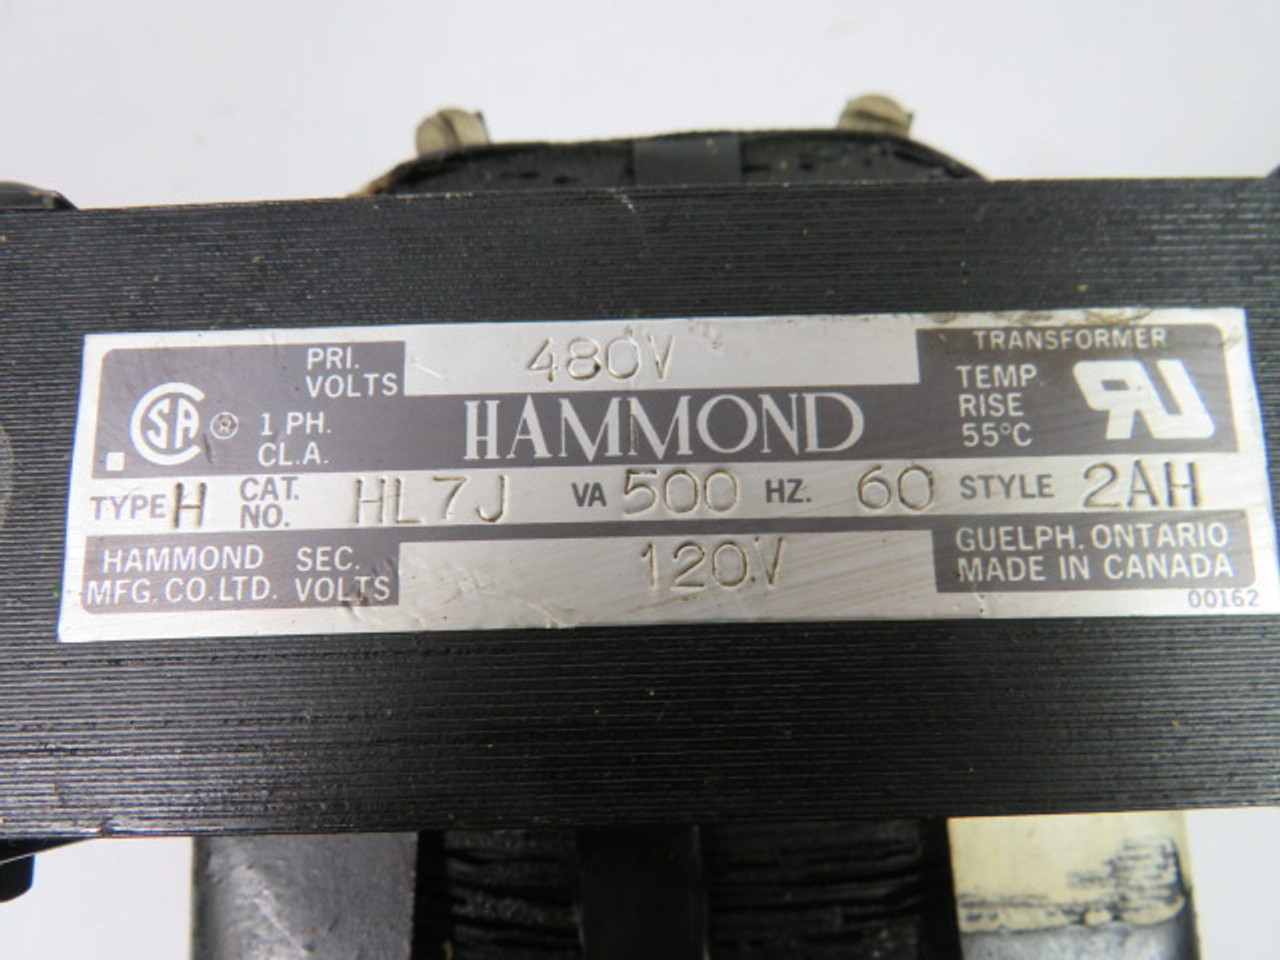 Hammond HL7J Transformer 500VA Pri. 480V Sec. 120V 1PH 60Hz. USED